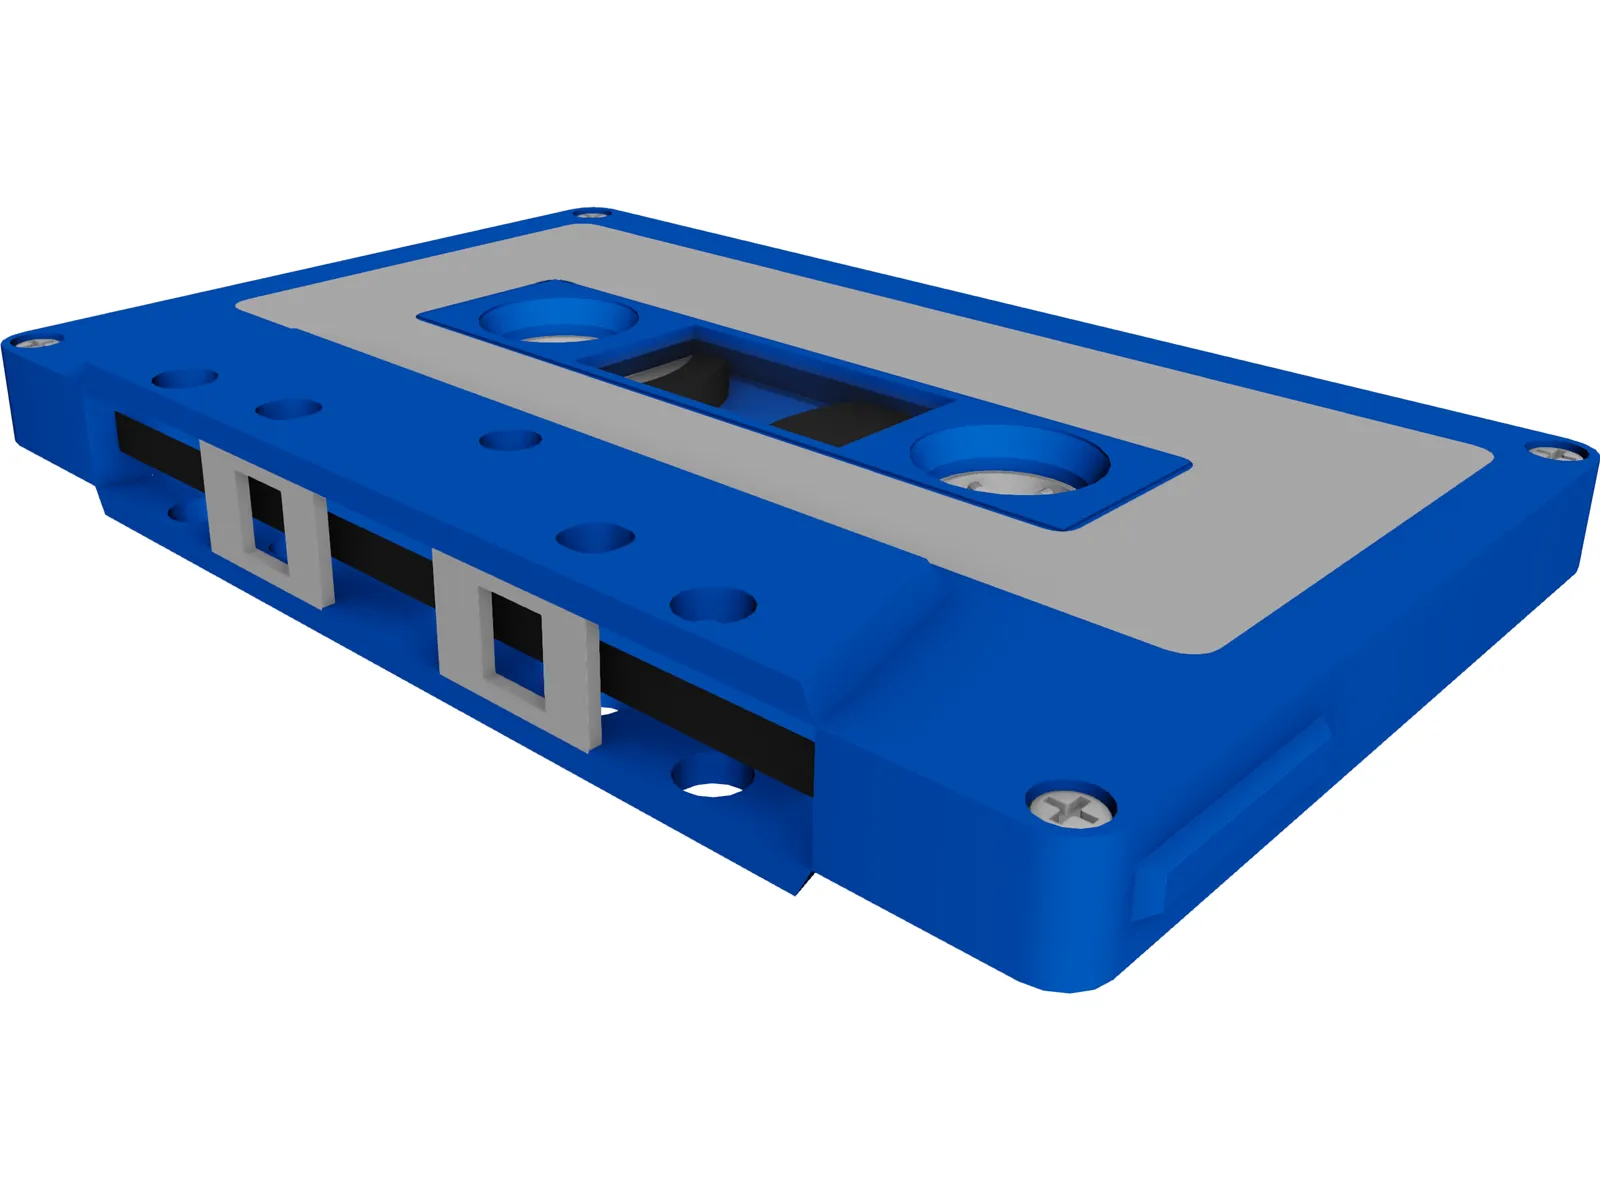 Audio Cassette Tape 3D Model